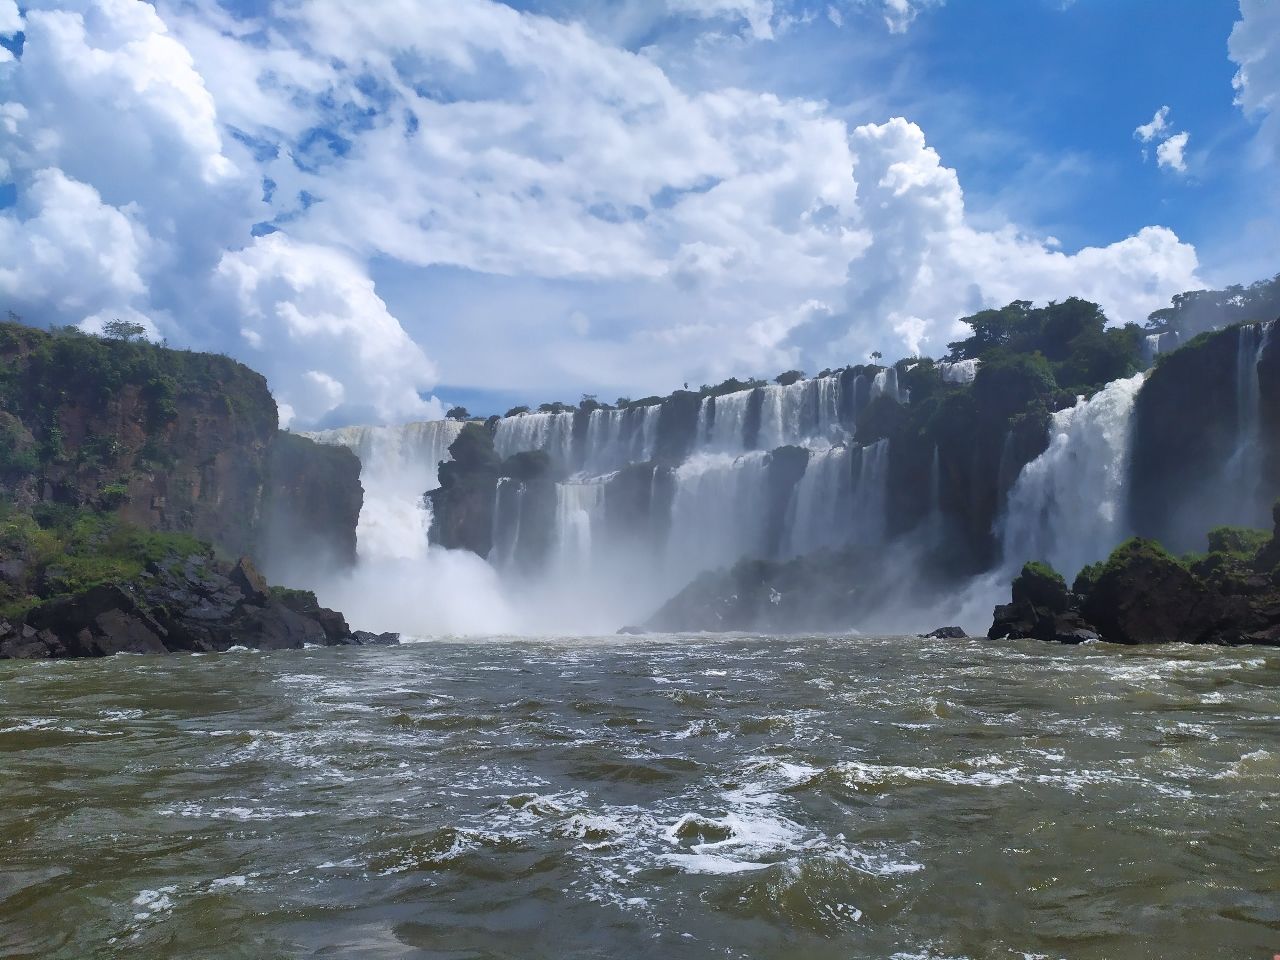 Cataratas del Iguazú - From Ferry, Argentina